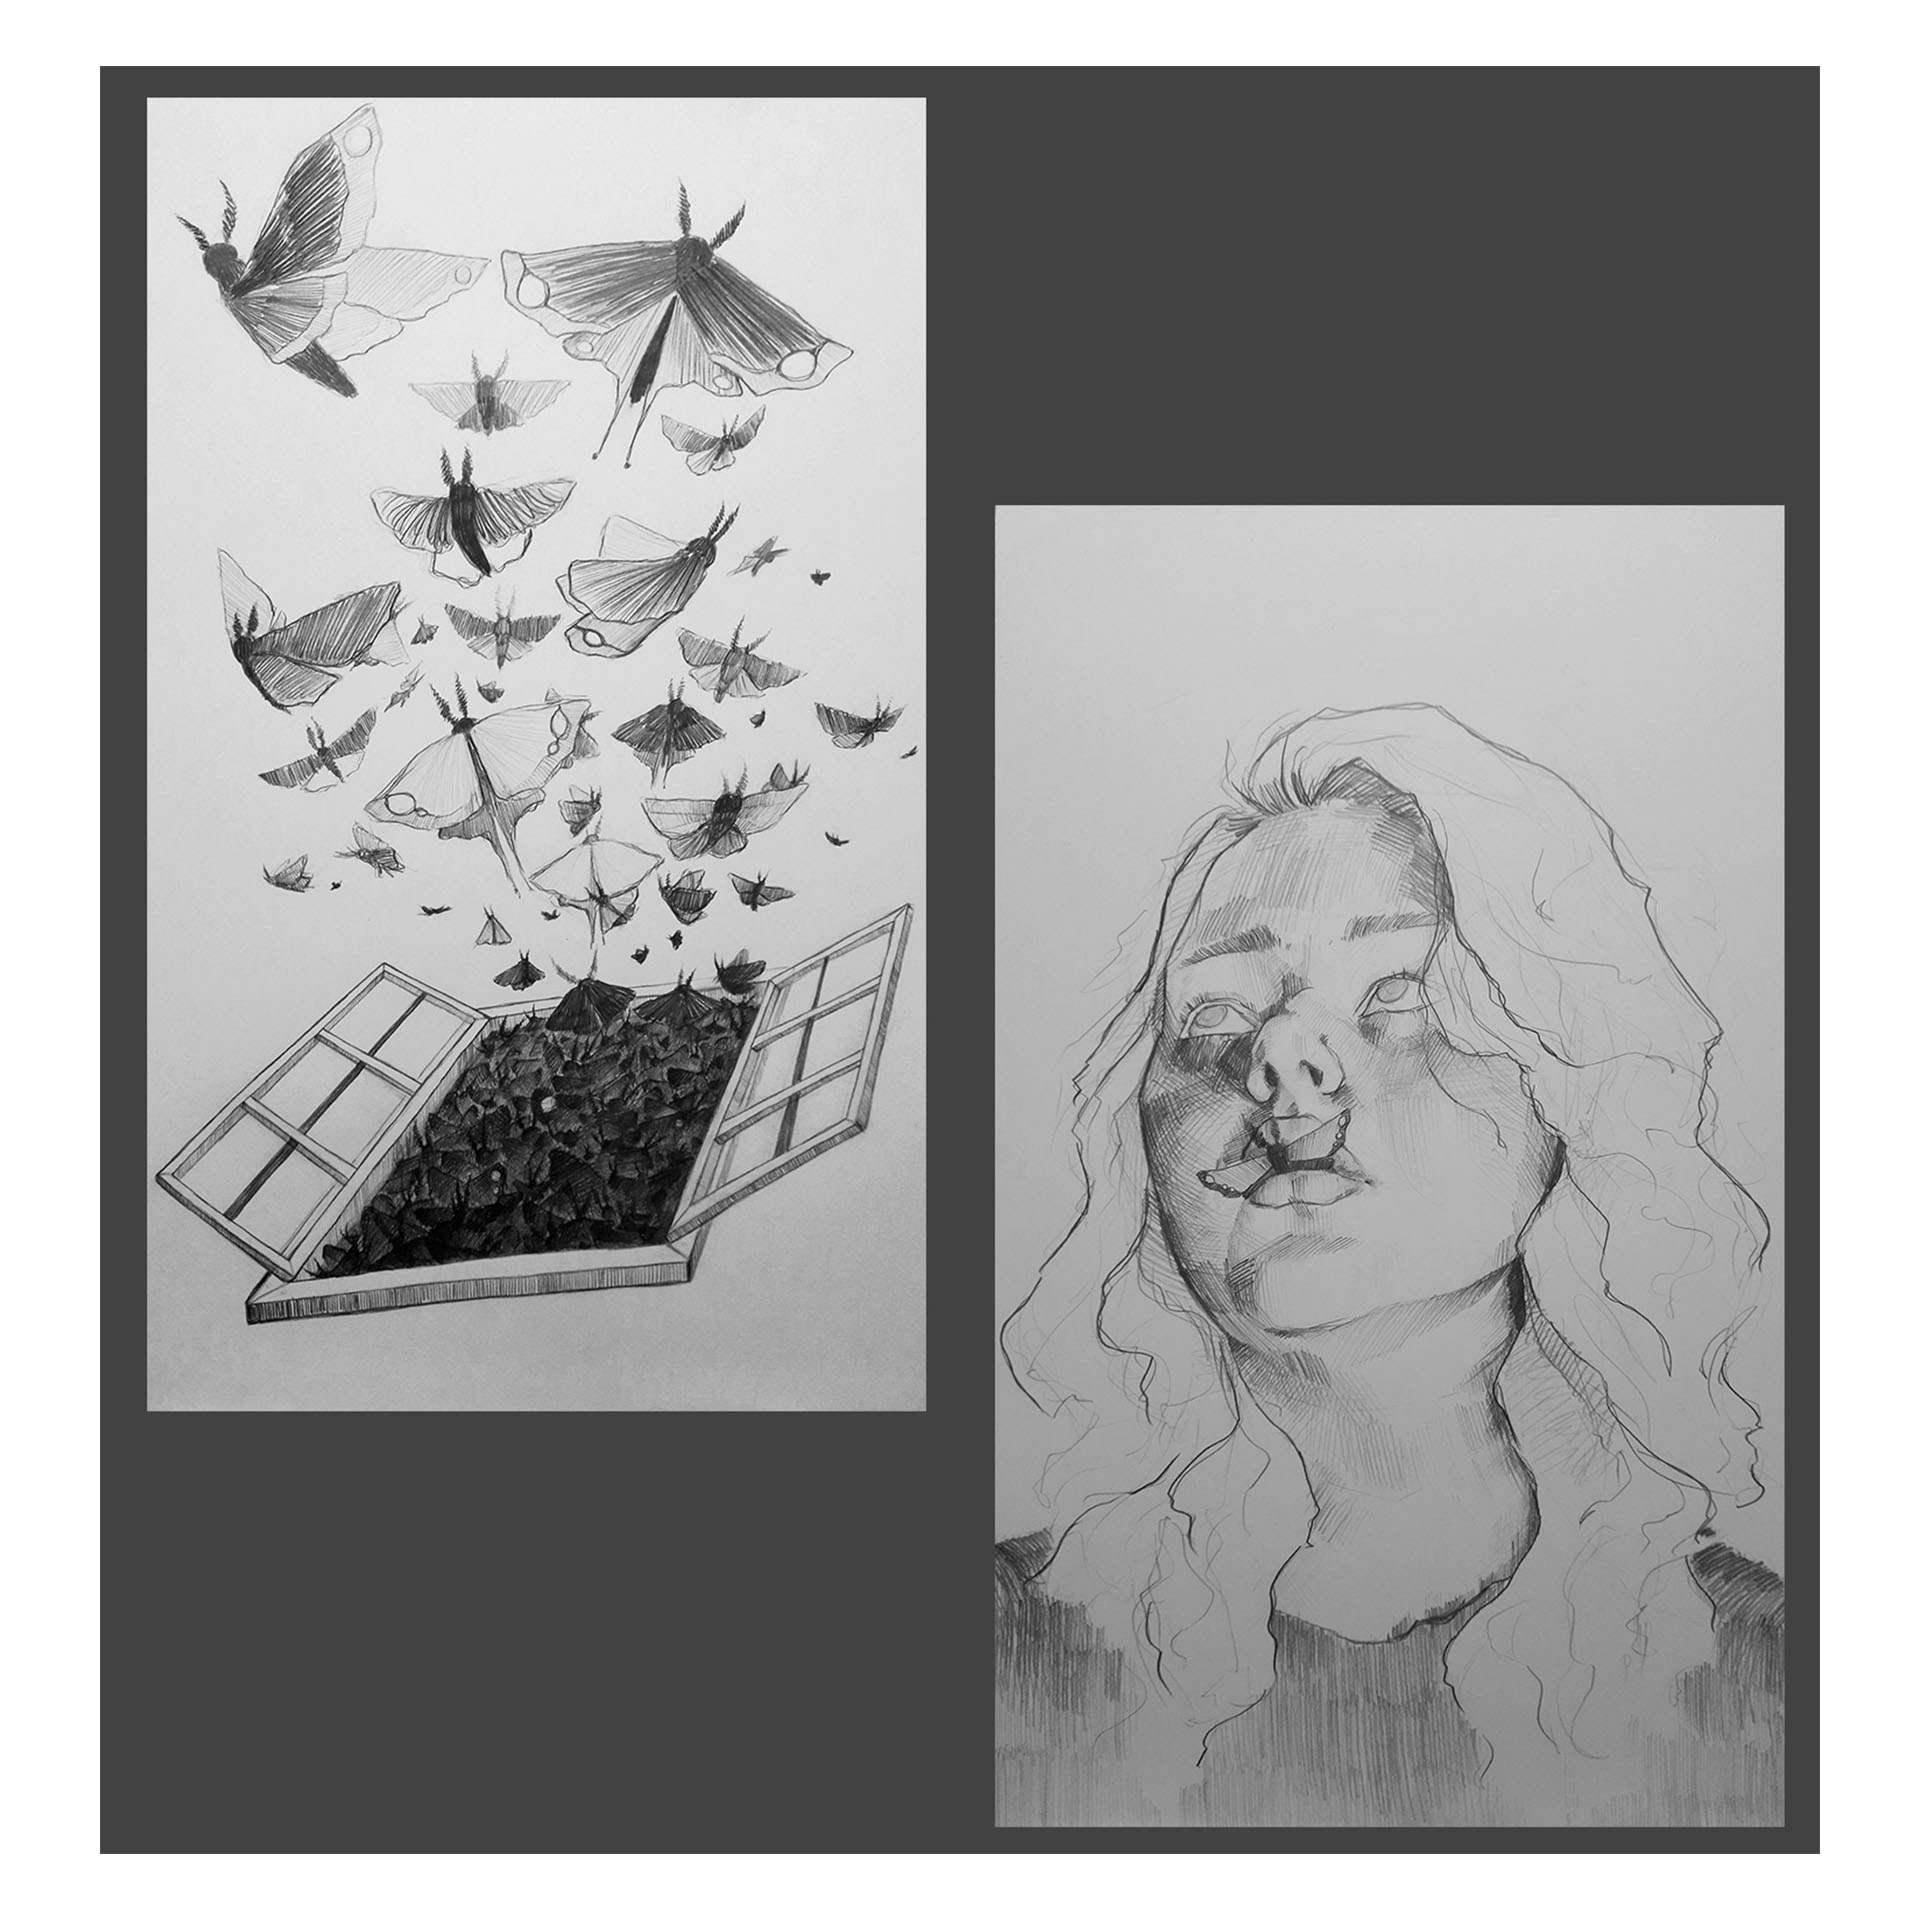 Na grafice widnieje postać kobiety z motylem w obrębie ust. Po lewej stronie zaprezentowano rysunek okna z którego wydobywa się spora ilość motyli.